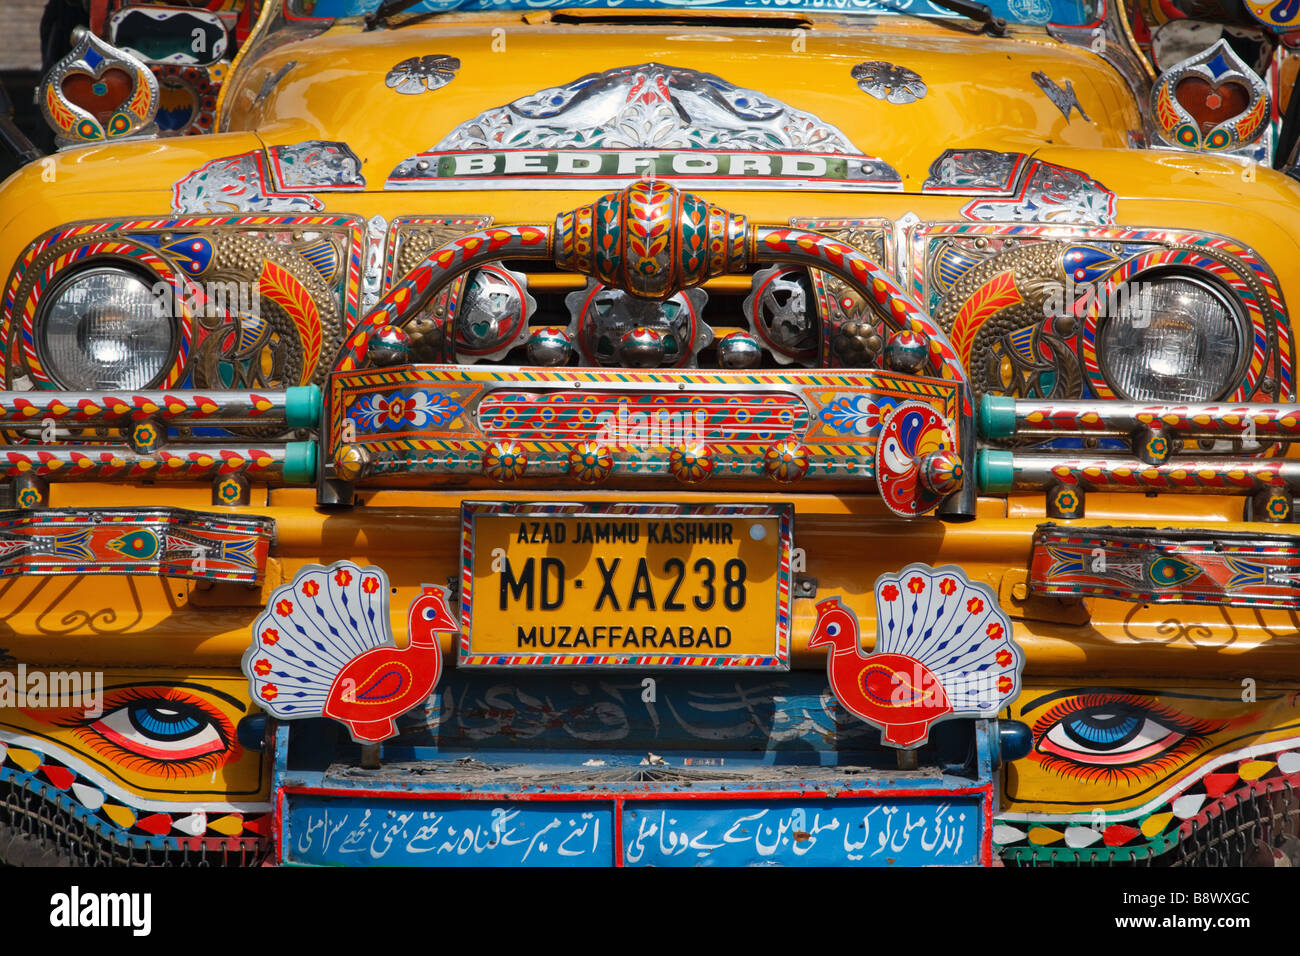 Camion typique richement décorée à Muzaffarabad, Pakistan Banque D'Images